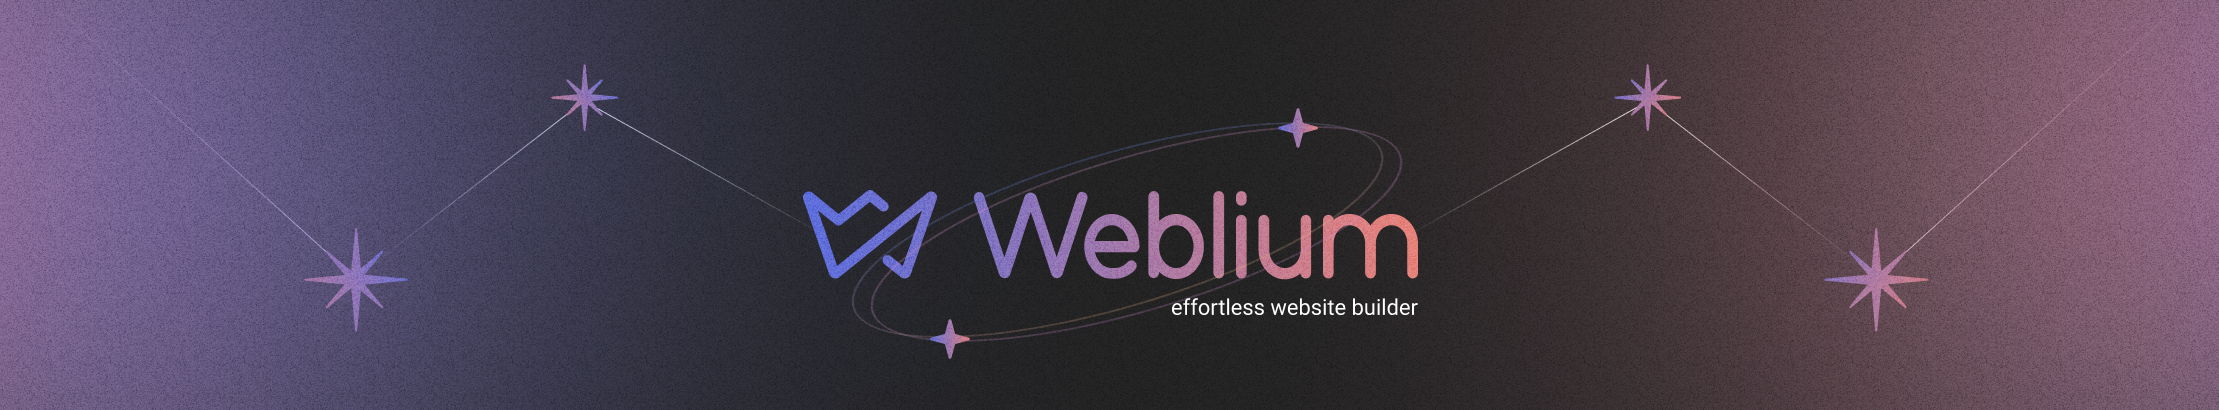 Weblium Design's profile banner